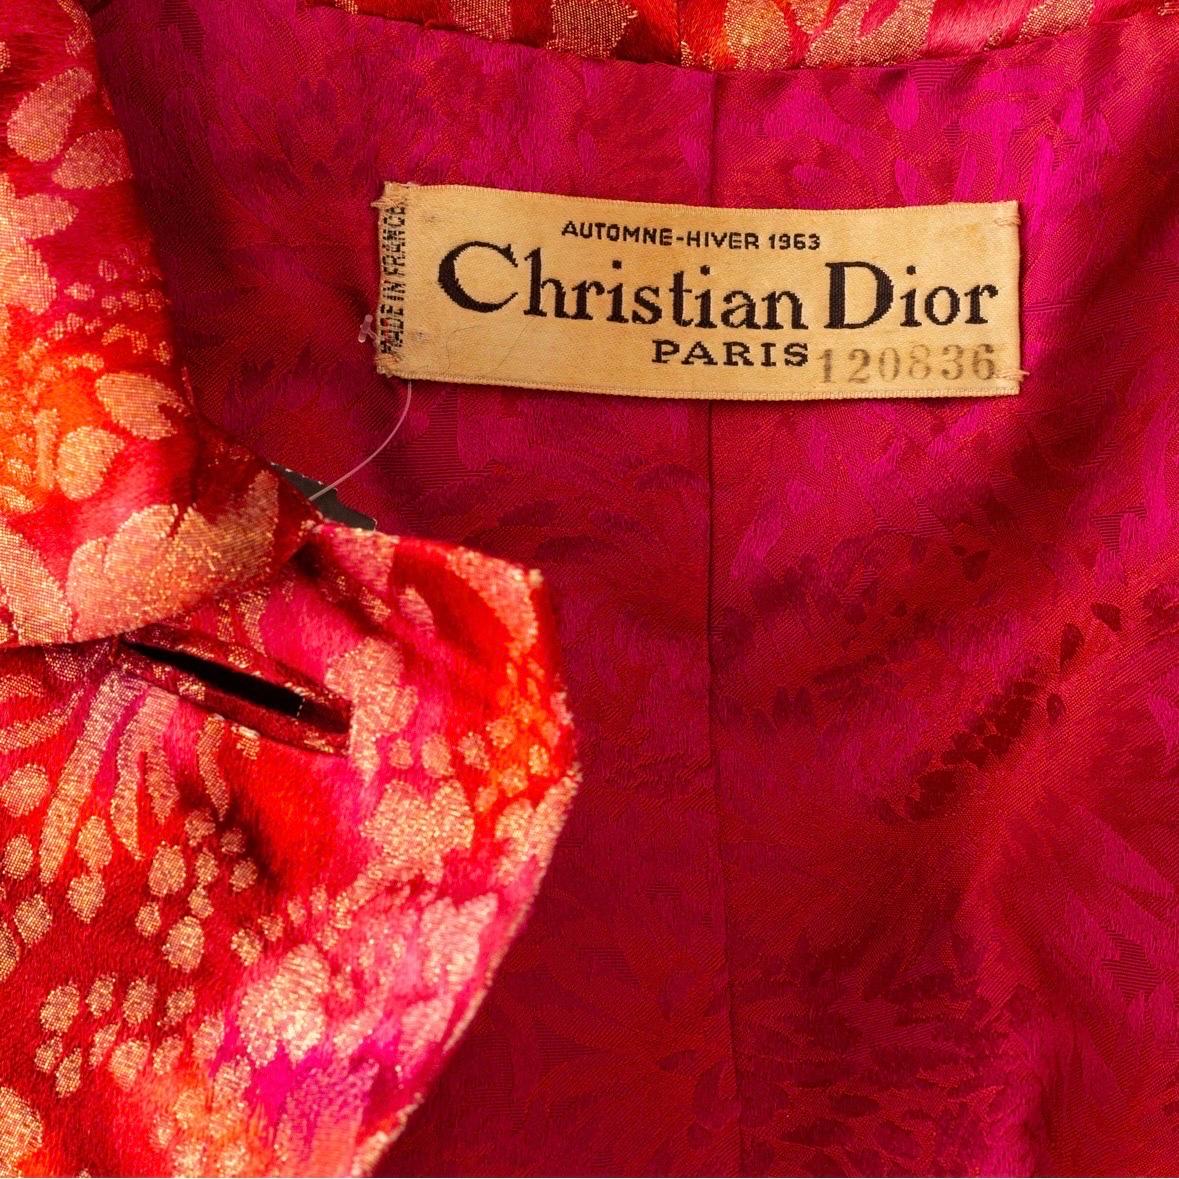 Christian Dior 1963 Manteau d'opéra bordé de fourrure en brocart rouge et or

Collectional de l'automne 1963 par Marc Bohan
Rouge/Rose/Or Lurex/Métallique
Motif floral en brocart
Col pointu
Poignets bordés de fourrure
Boutons recouverts de